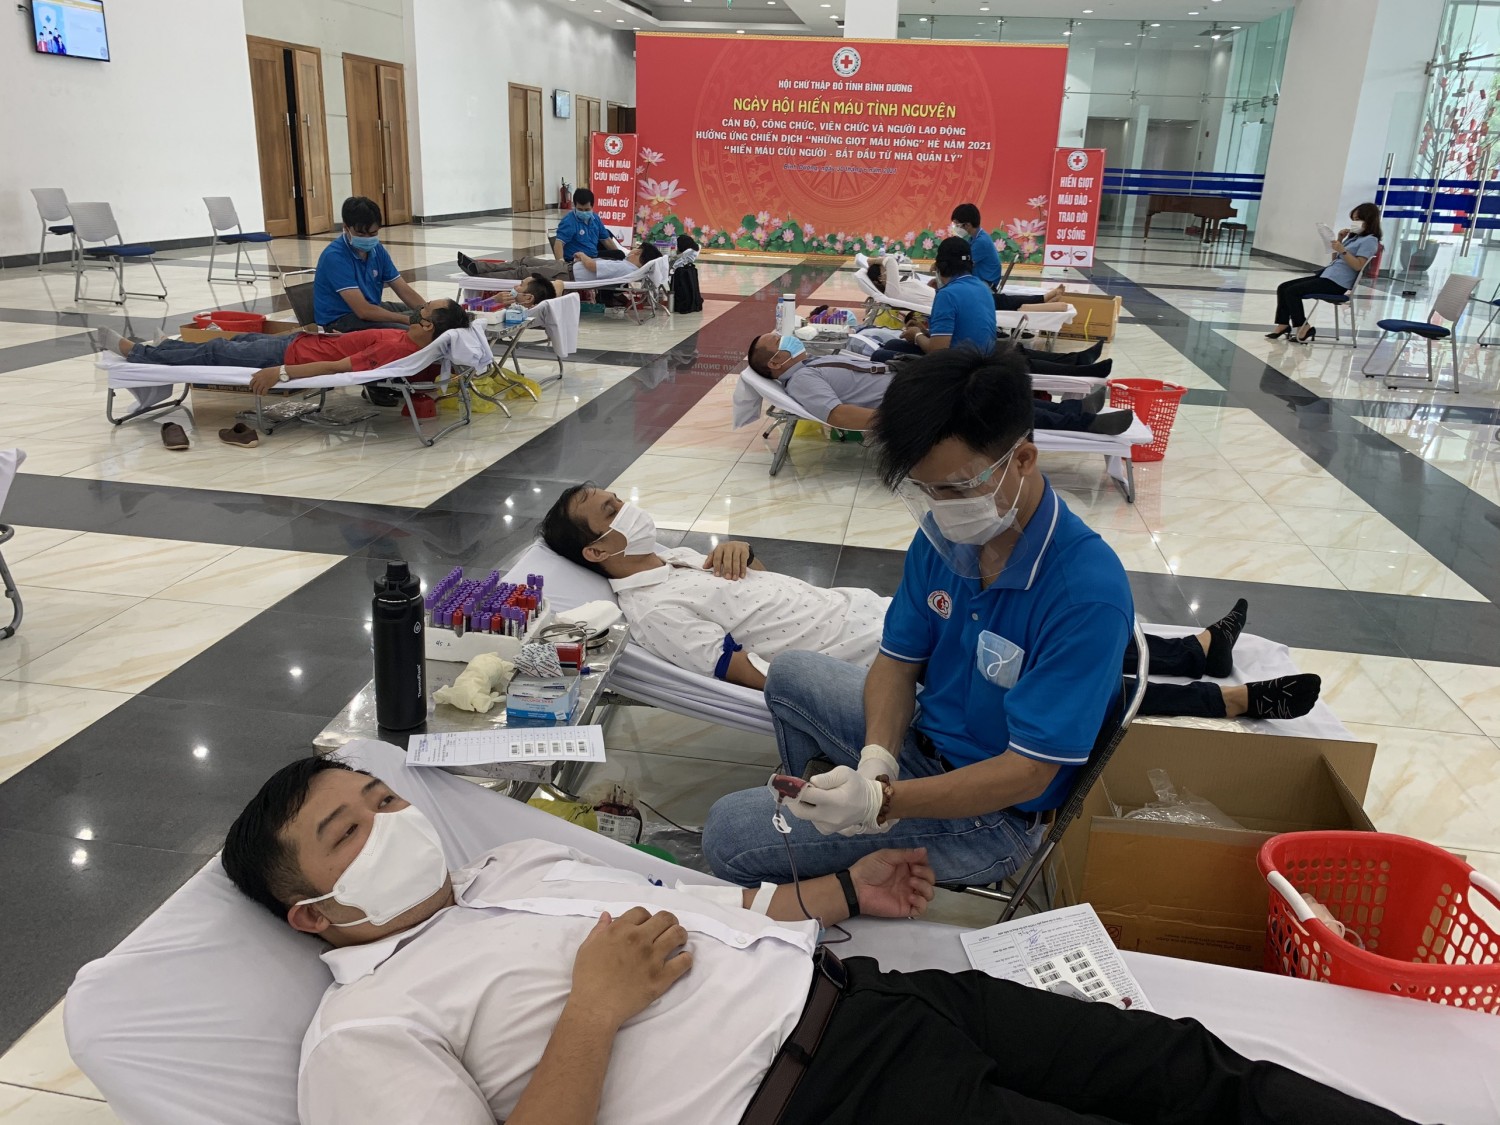 3 Quang cảnh ngày hội hiến máu tình nguyện